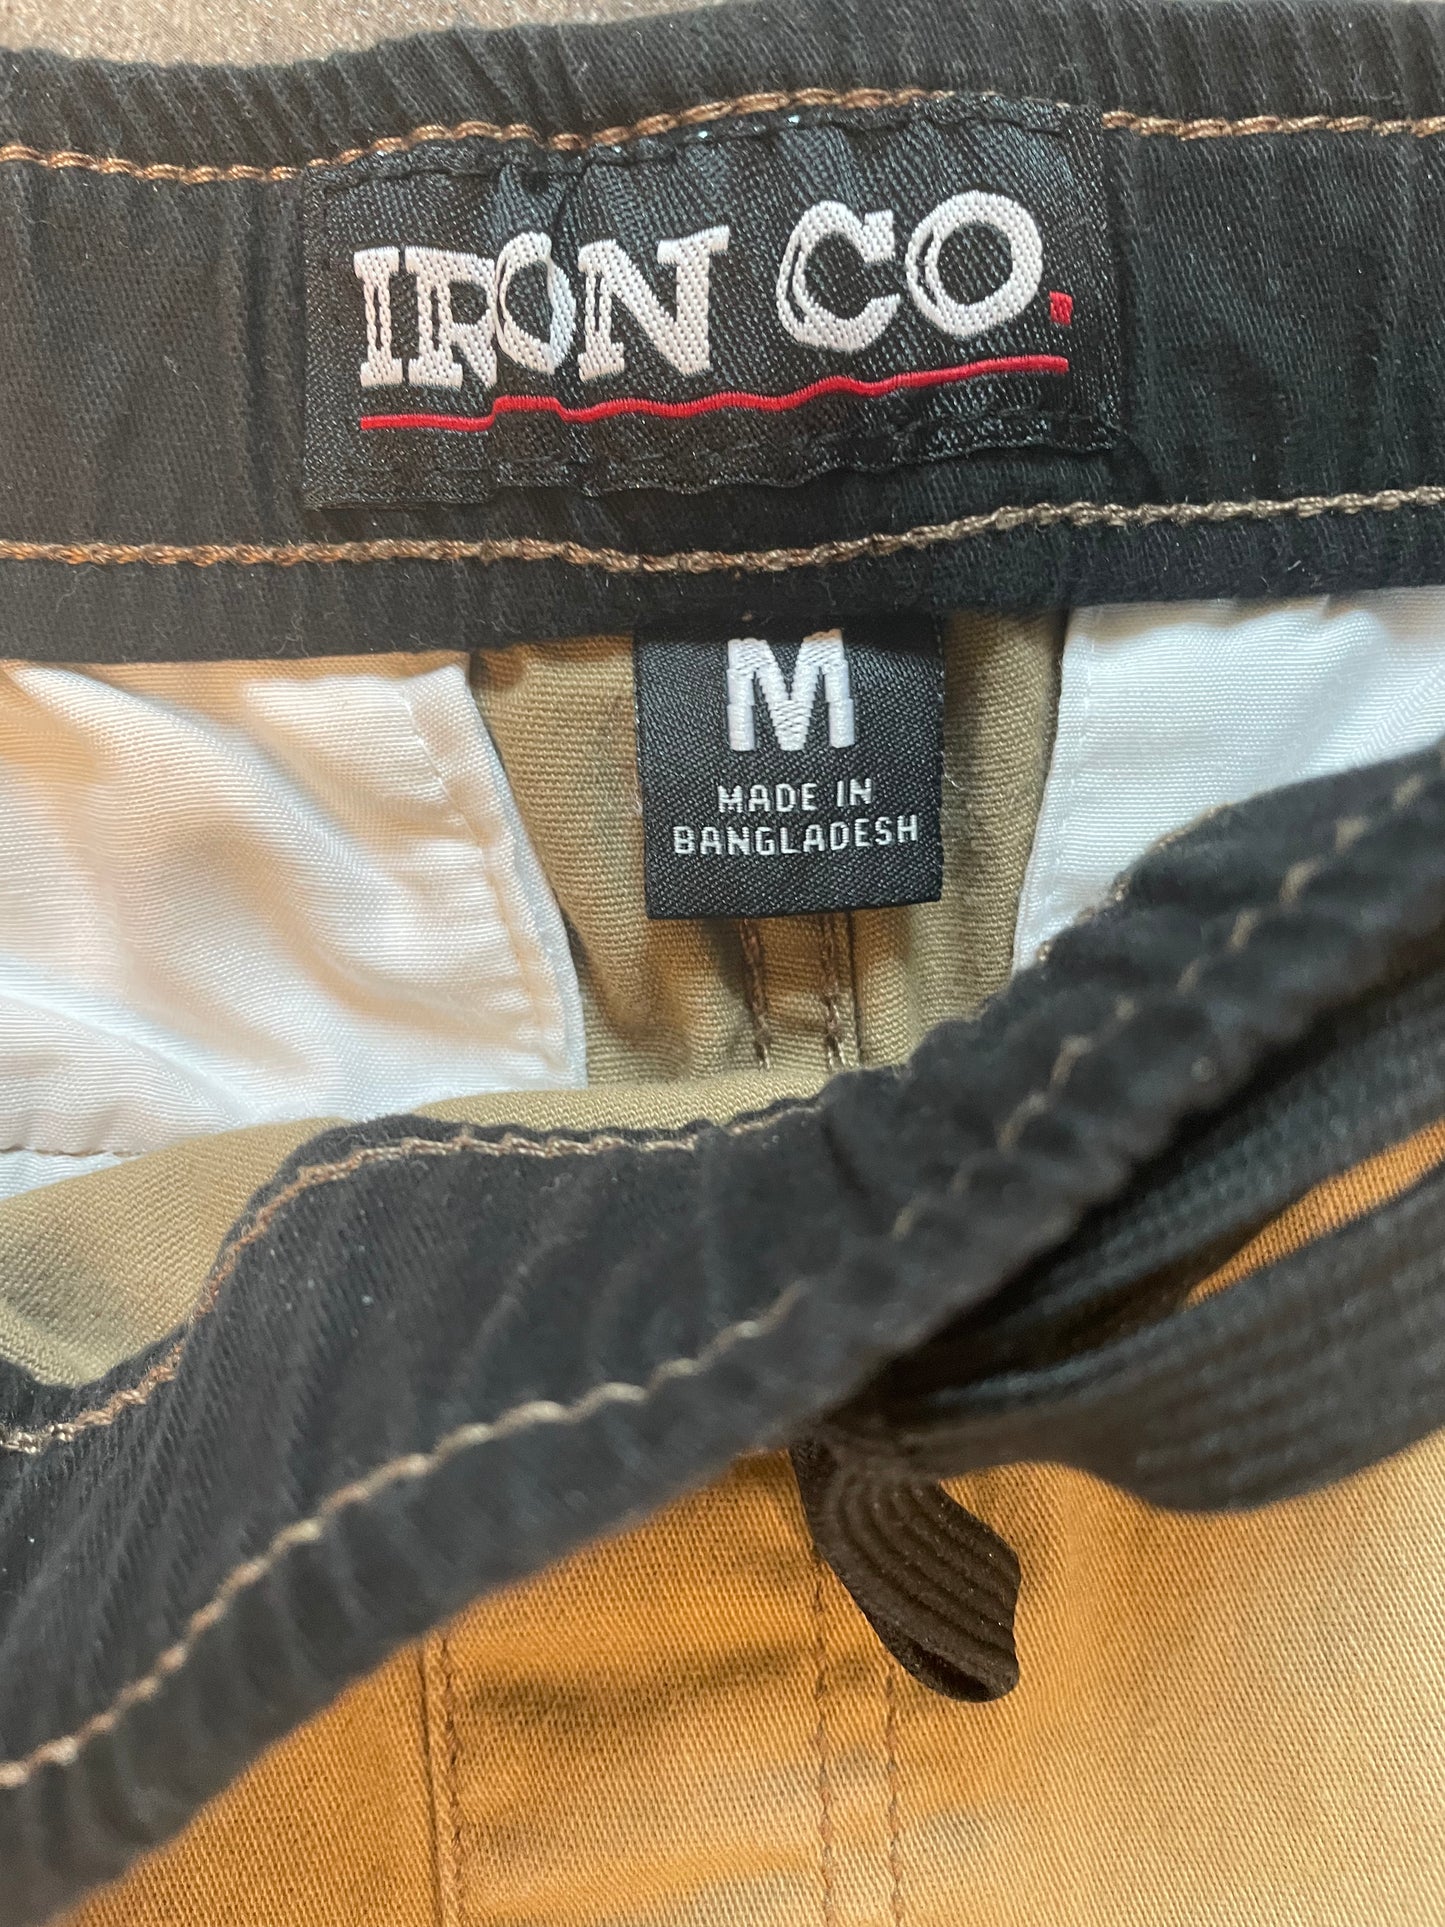 Iron Co. Cuffed Khakis (M)